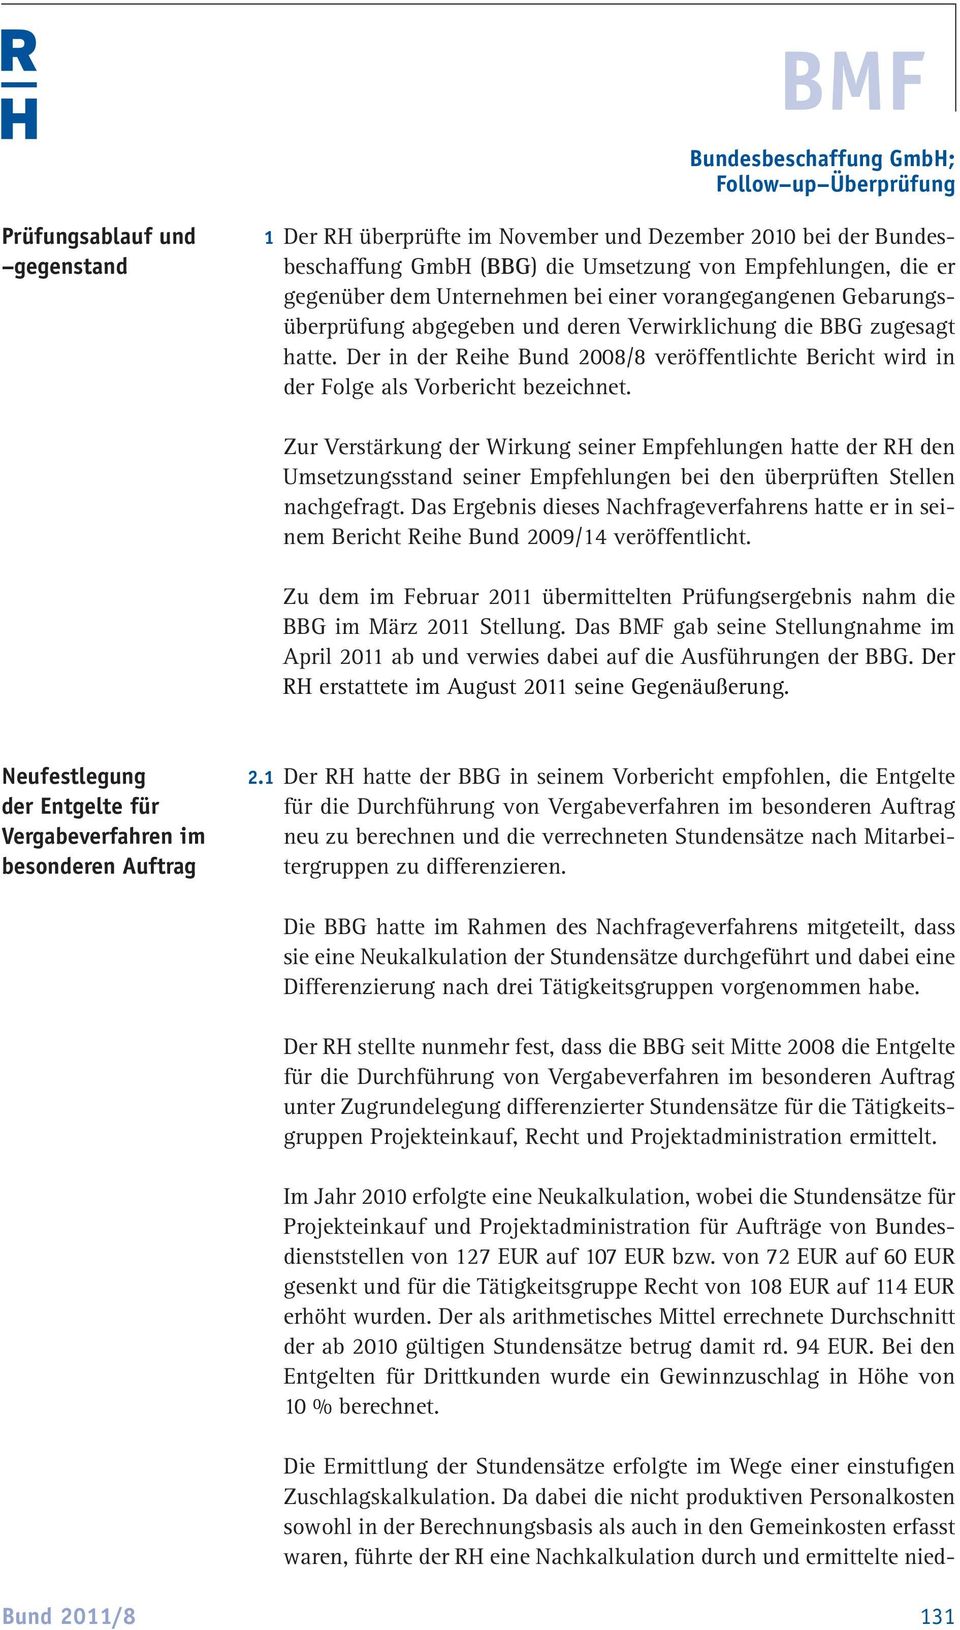 Der in der Reihe Bund 2008/8 veröffentlichte Bericht wird in der Folge als Vorbericht bezeichnet.